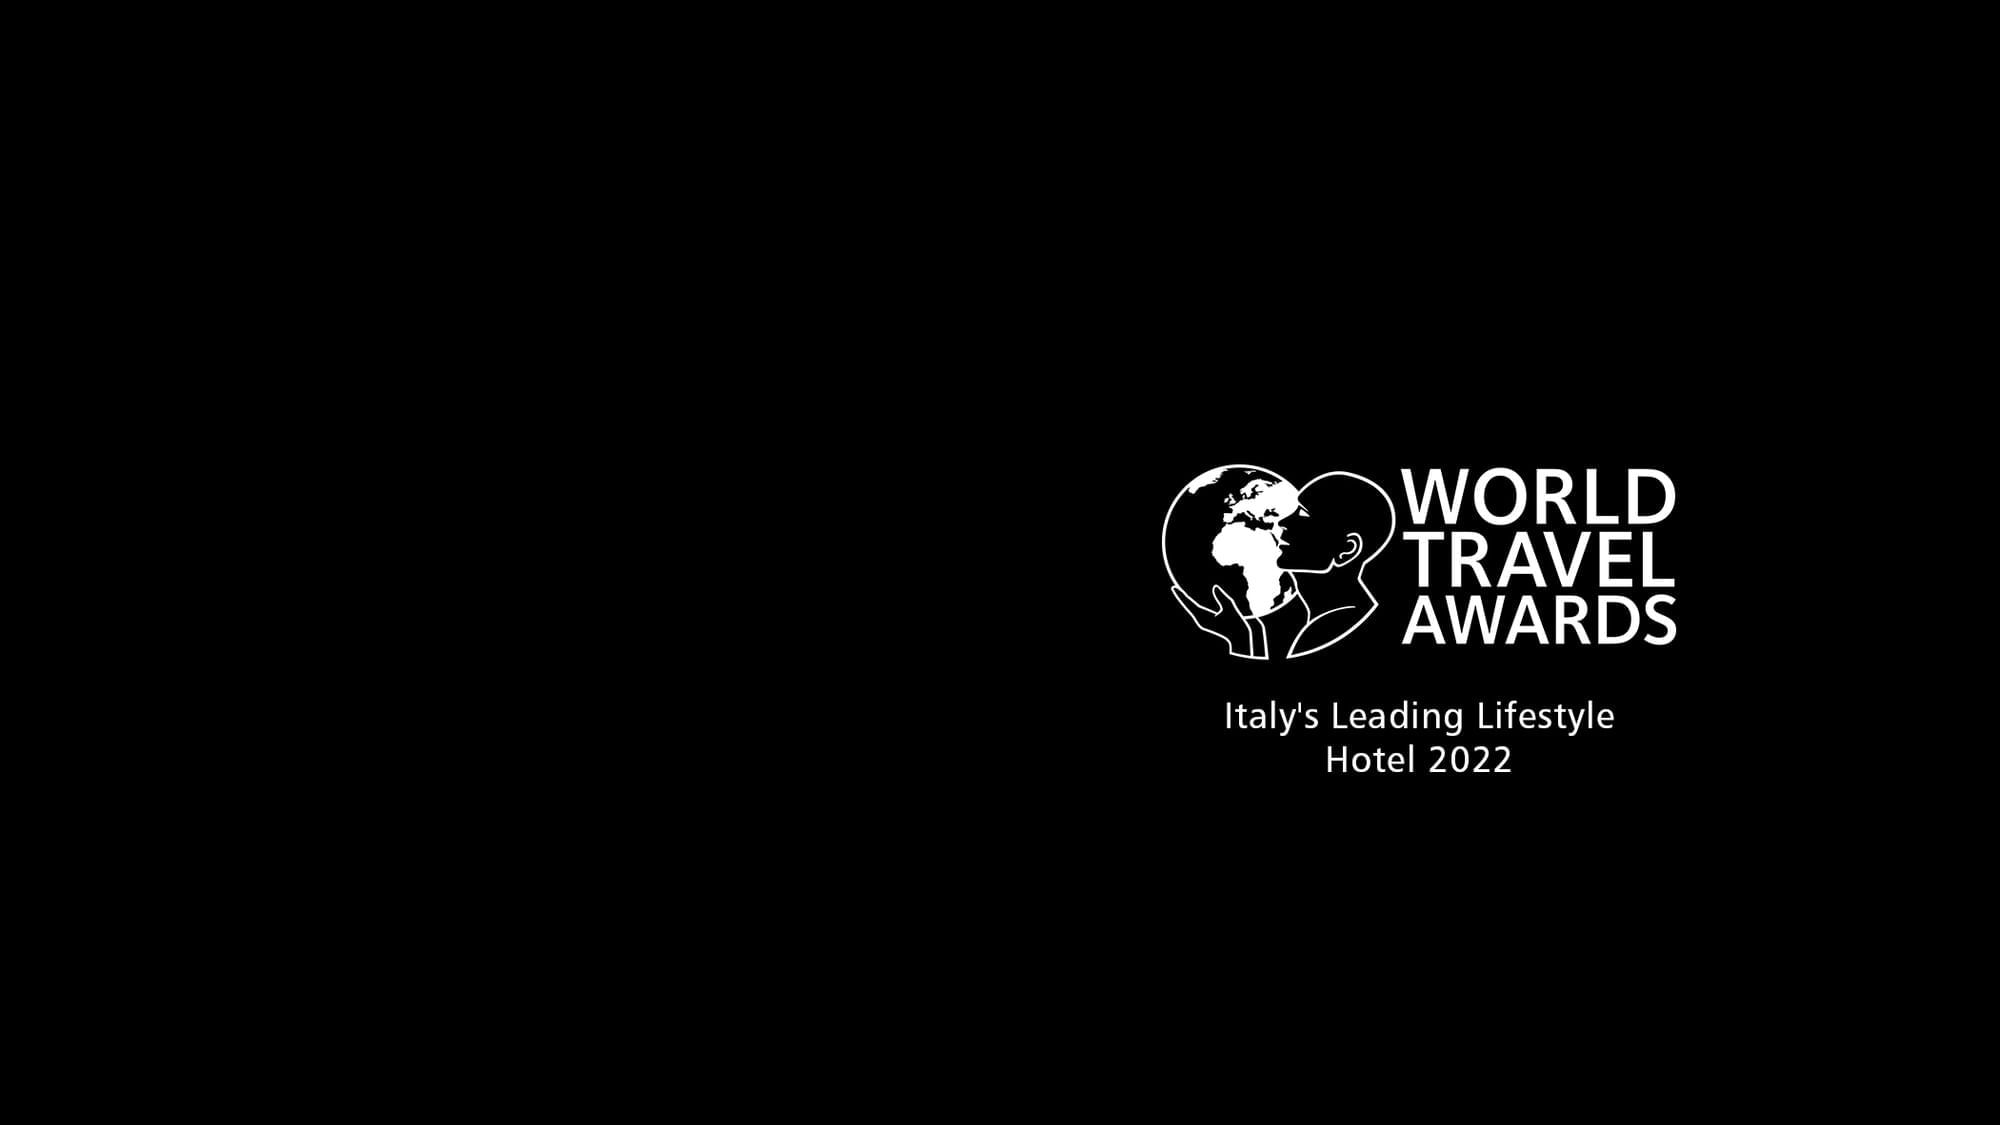 World Travel Awards: Italy’s Leading Lifestyle Hotel 2022